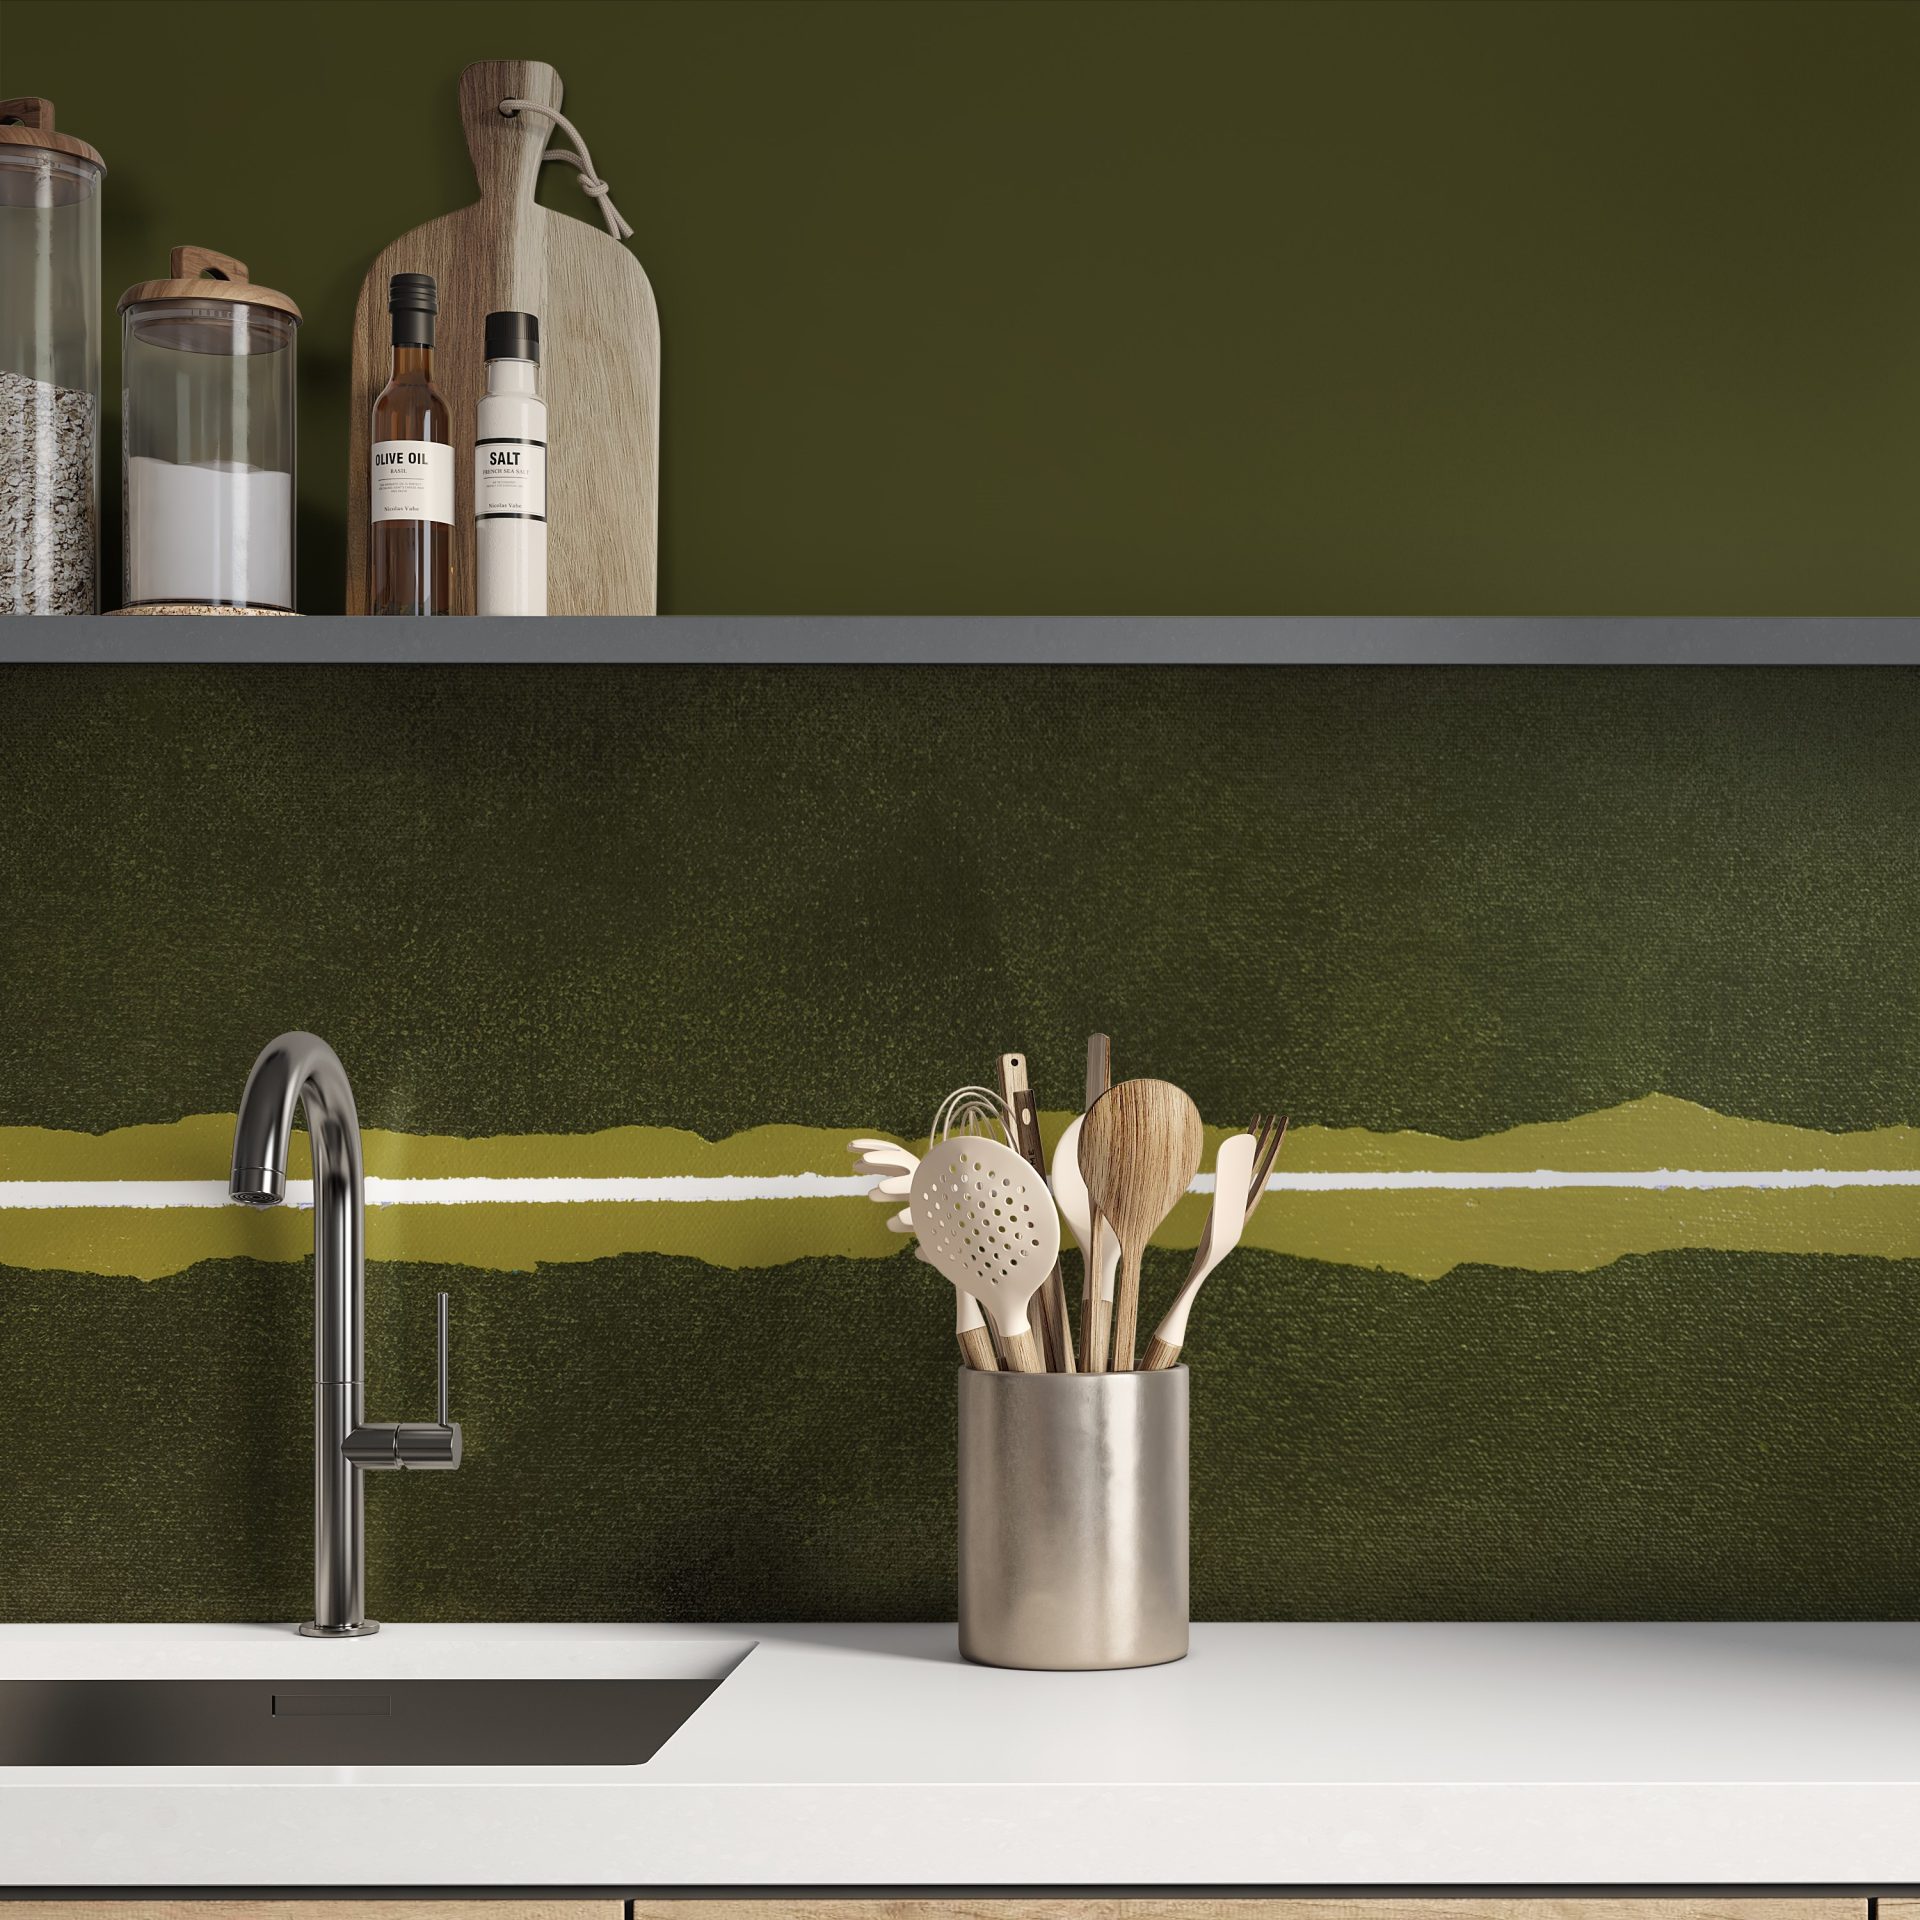 dark forest green glass splashback behind a kitchen sink